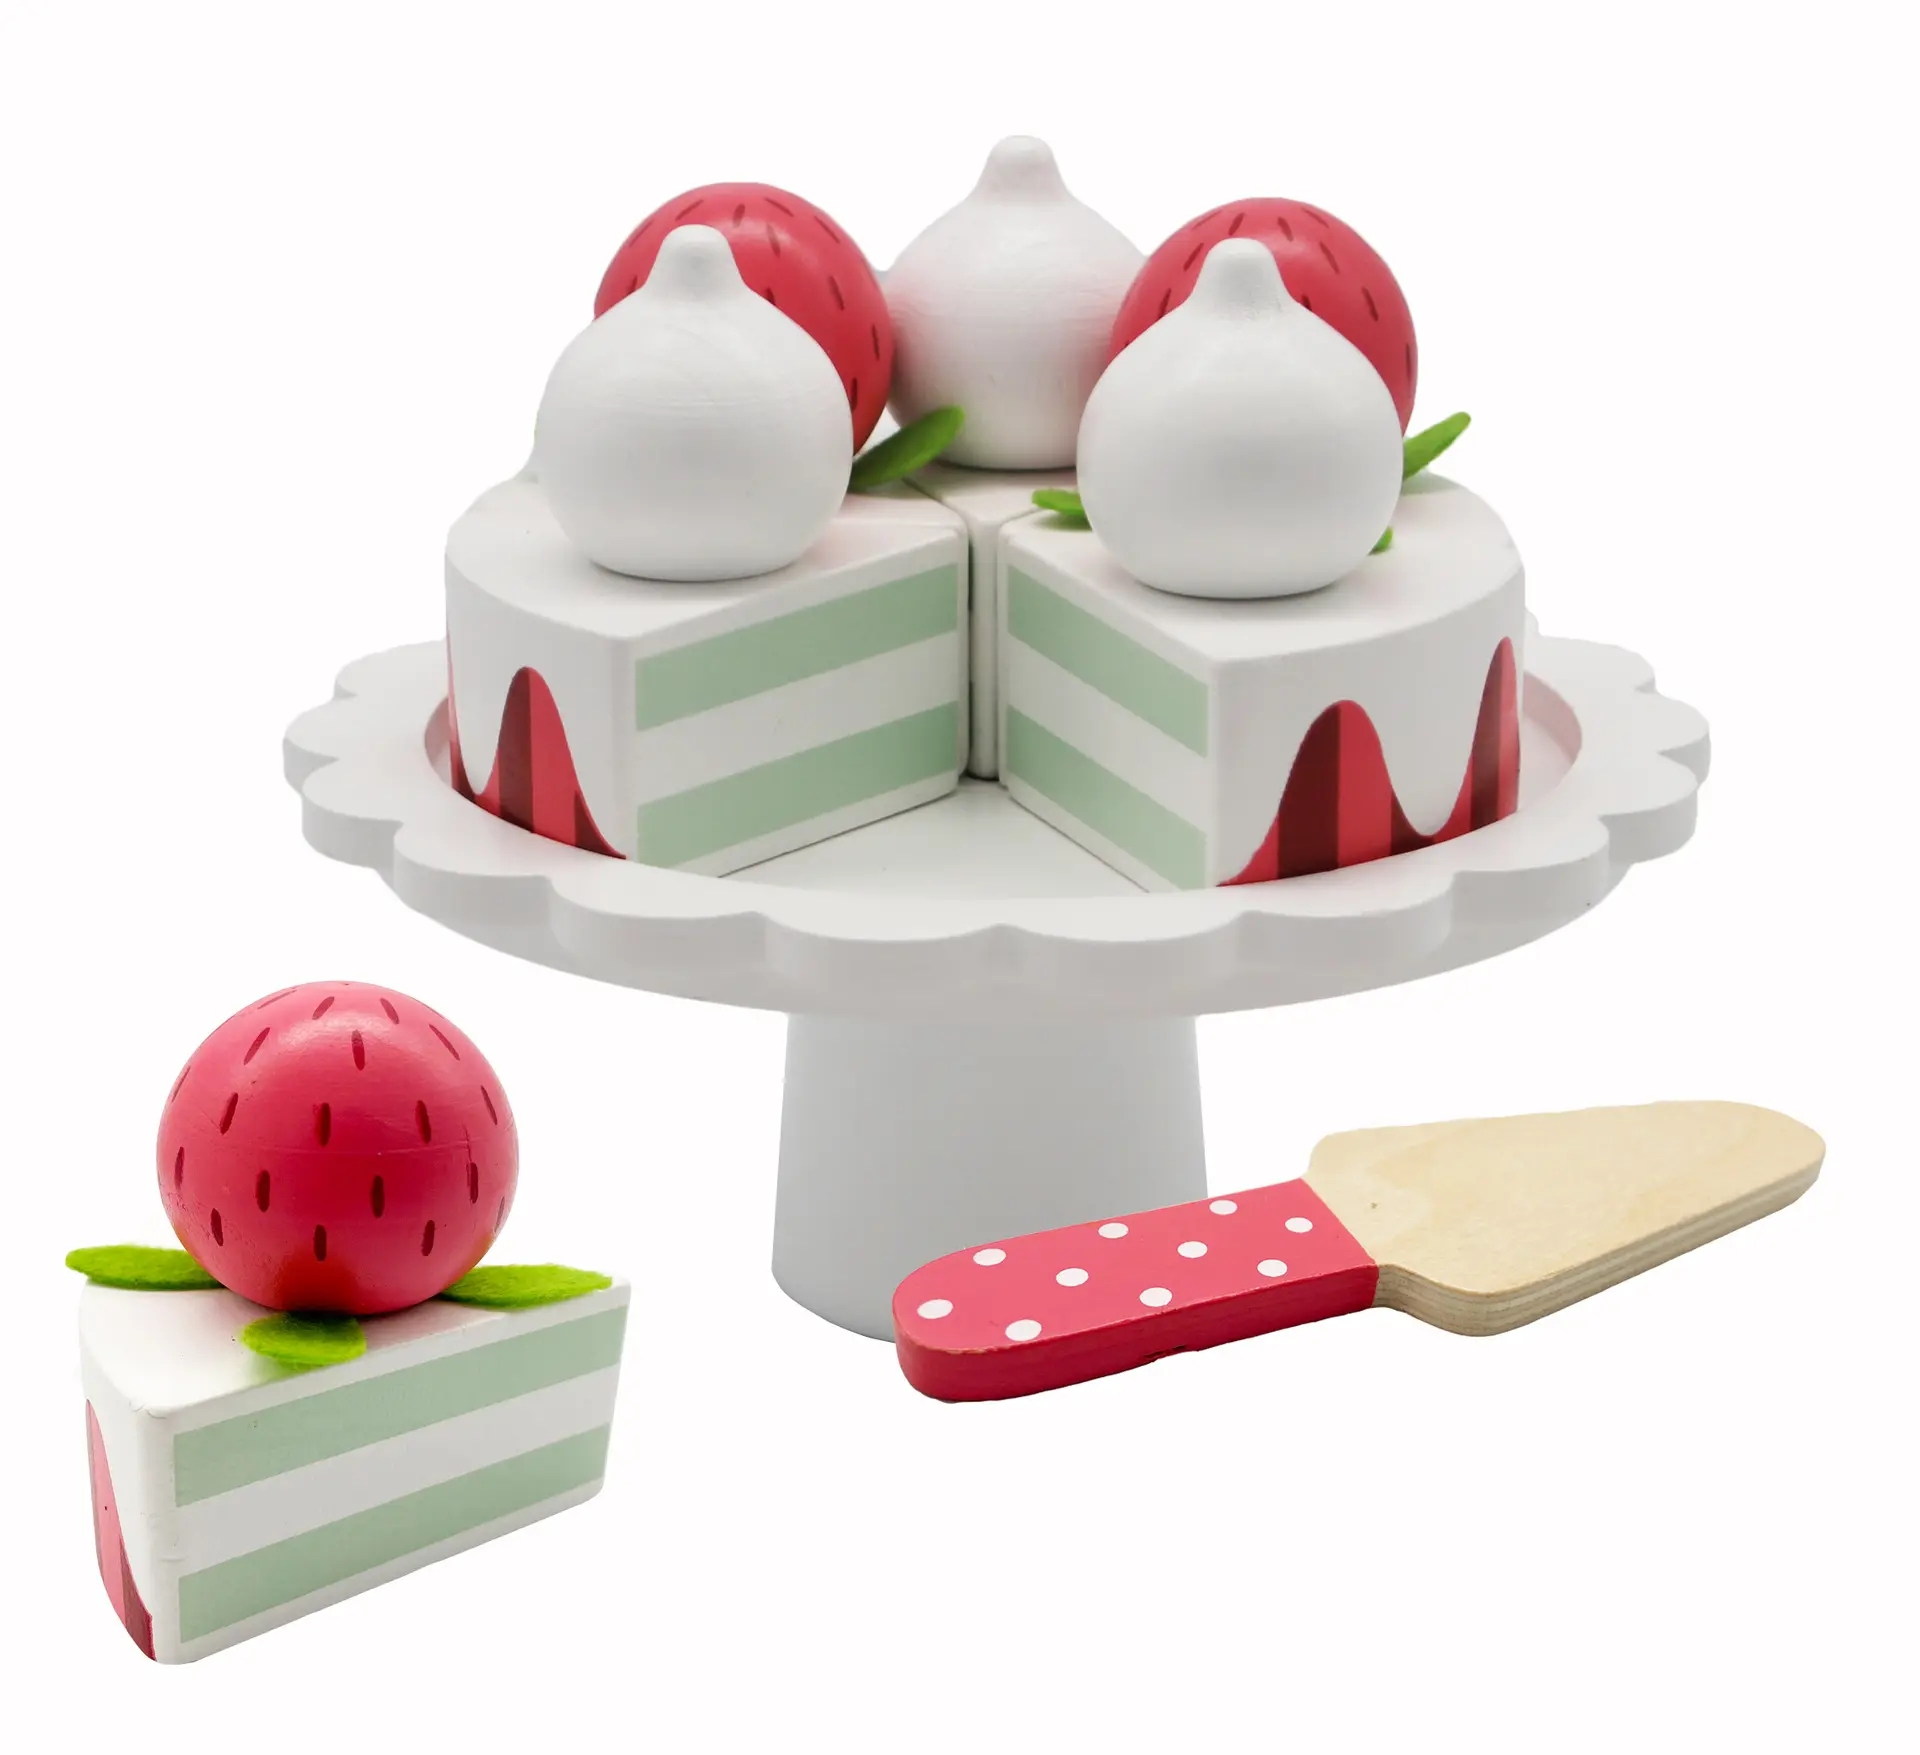 Ins jeu de rôle de Simulation de cuisine en bois mignon, jouets de gâteau à la crème aux fraises pour fille, cadeau d'anniversaire